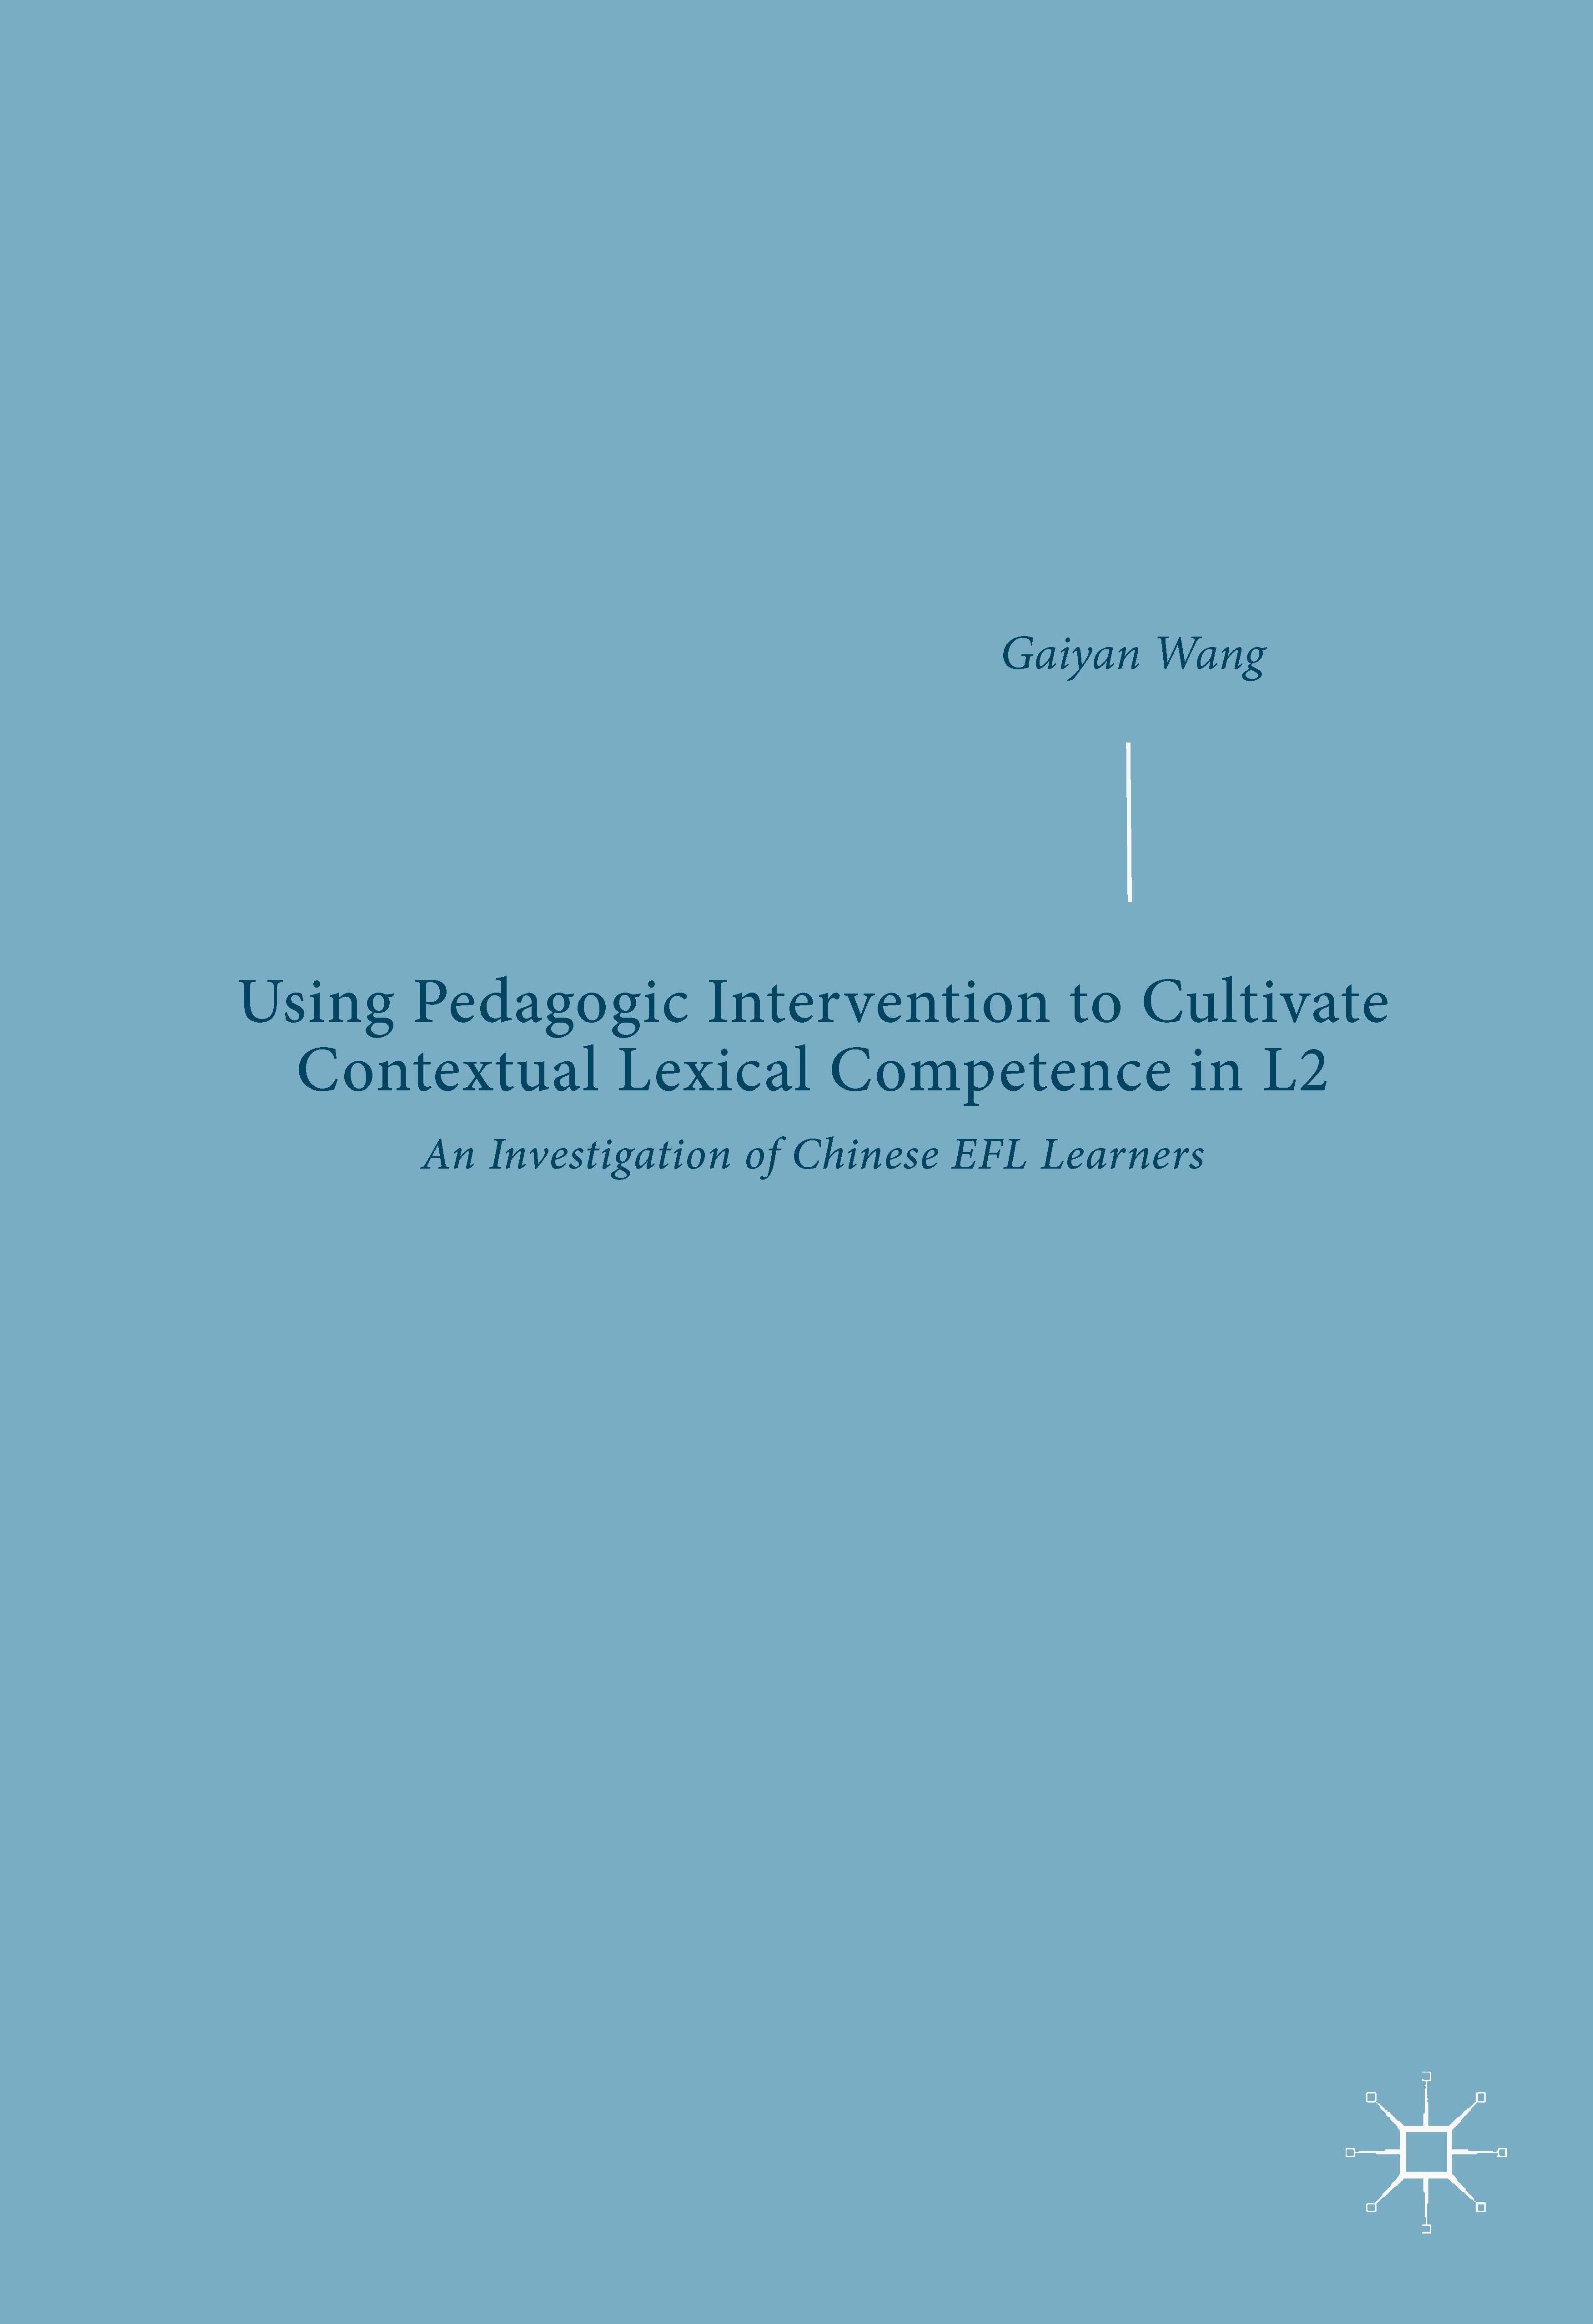 页面提取自－2019_Book_Using Pedagogic Intervention to Cultivate Contextual Lexical Competence in L2.jpg